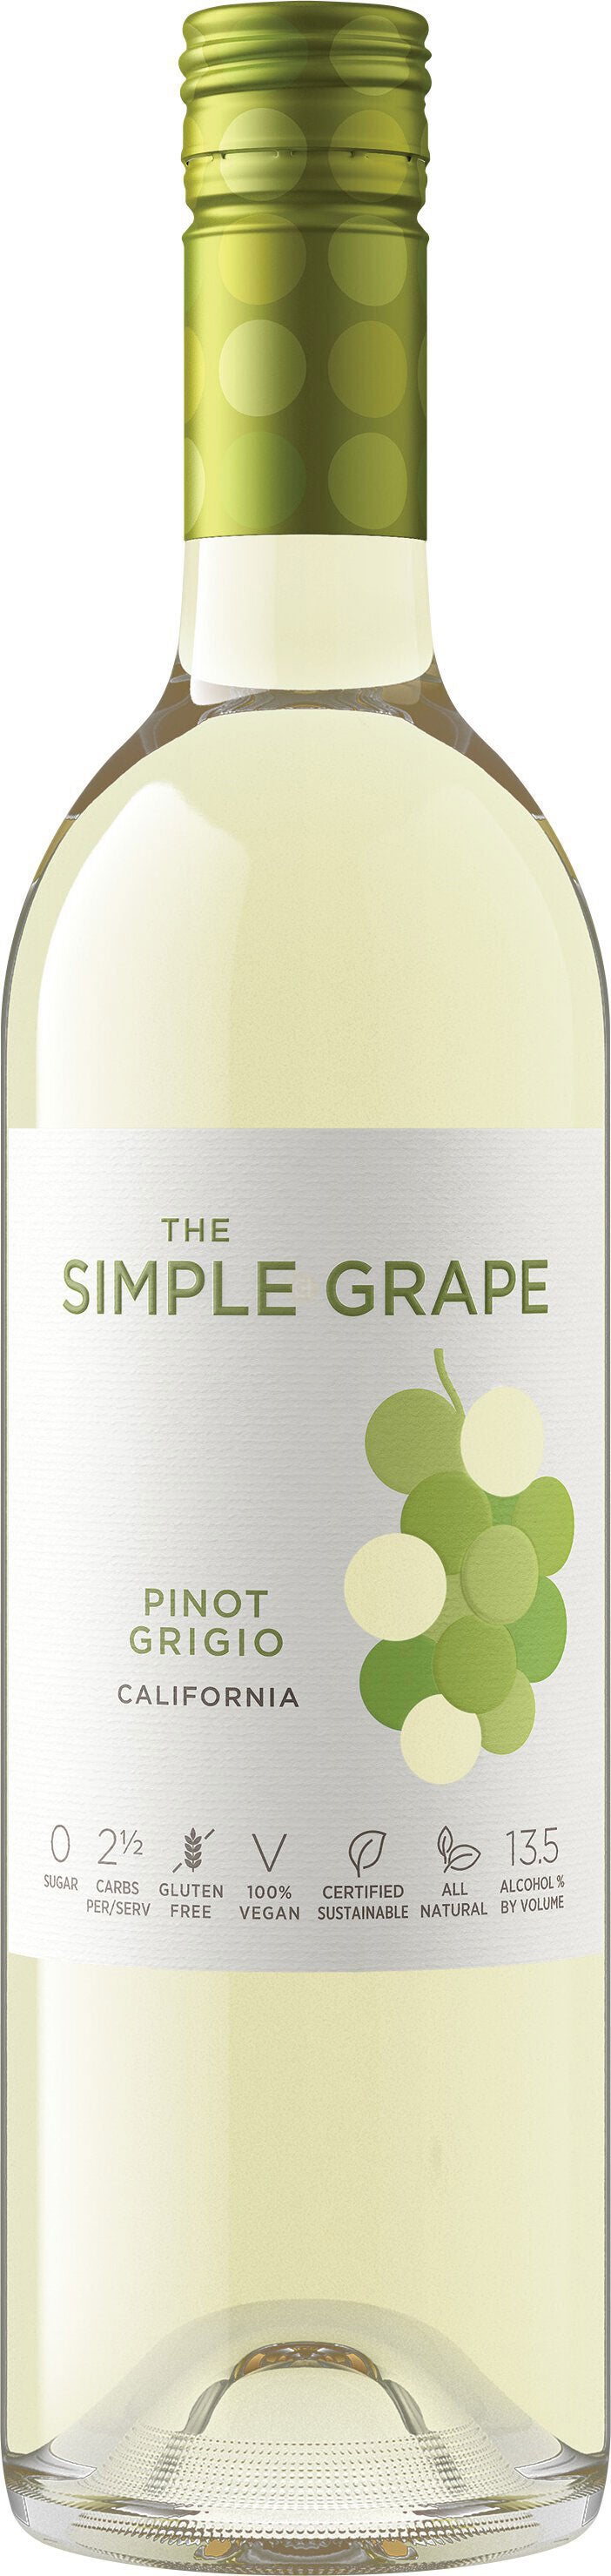 The Simple Grape Pinot Grigio 2020